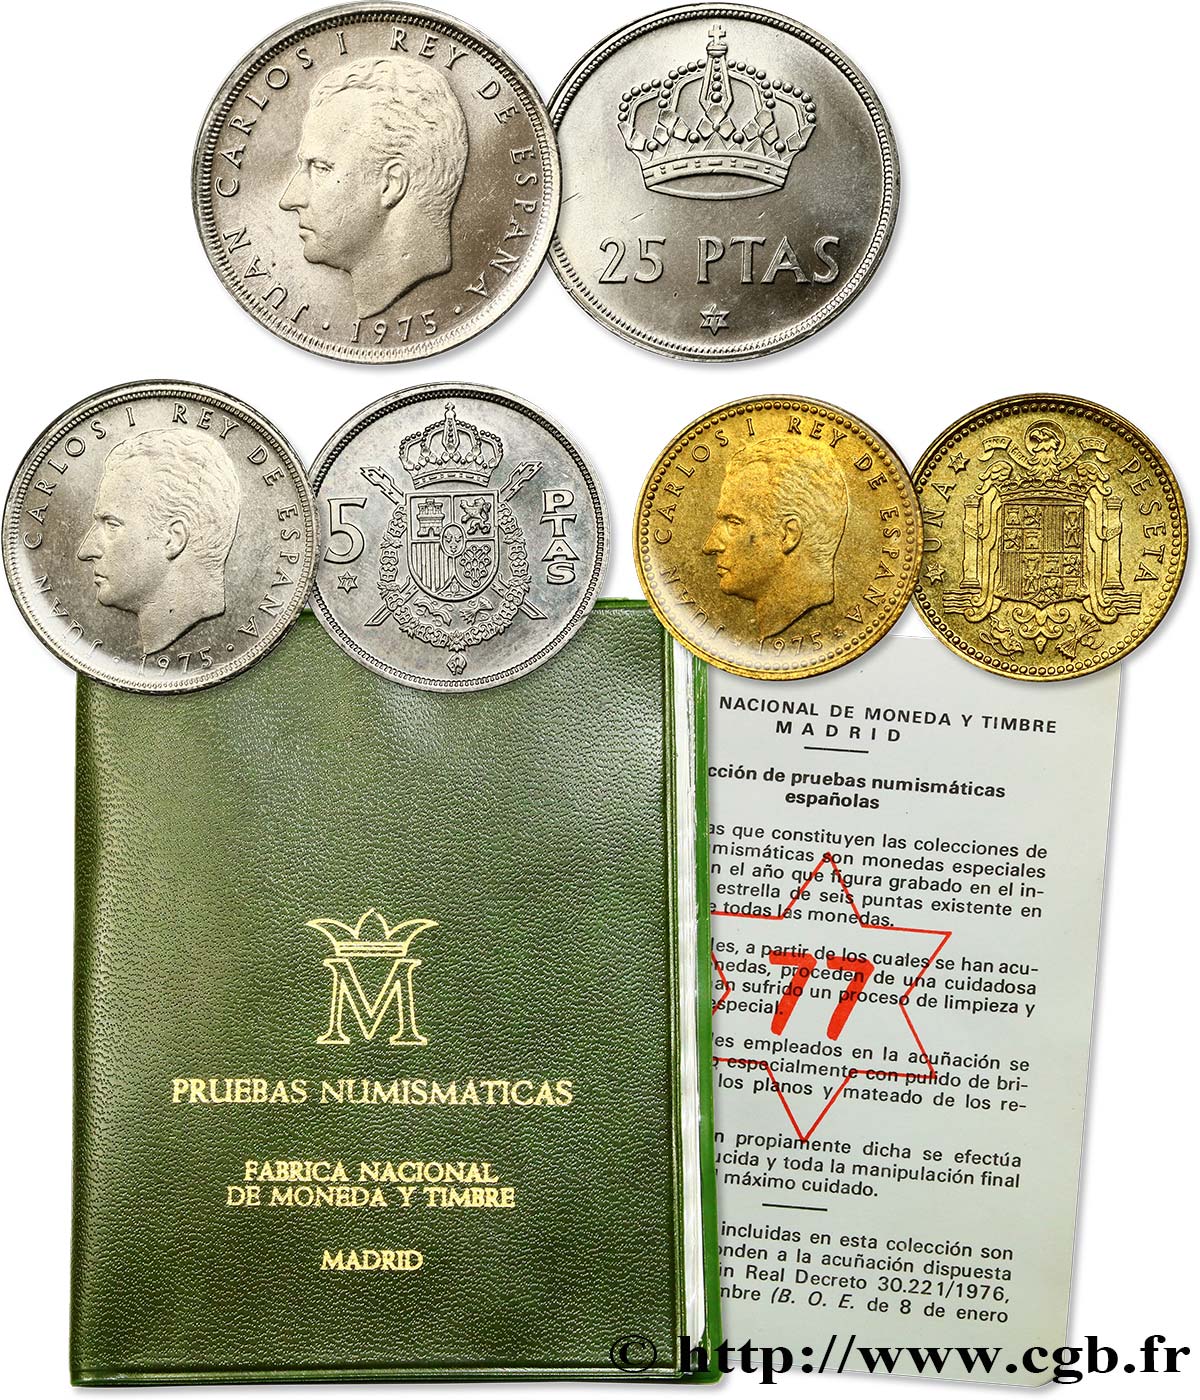 SPAIN série de 3 monnaies 1975 (77) 1977  MS 